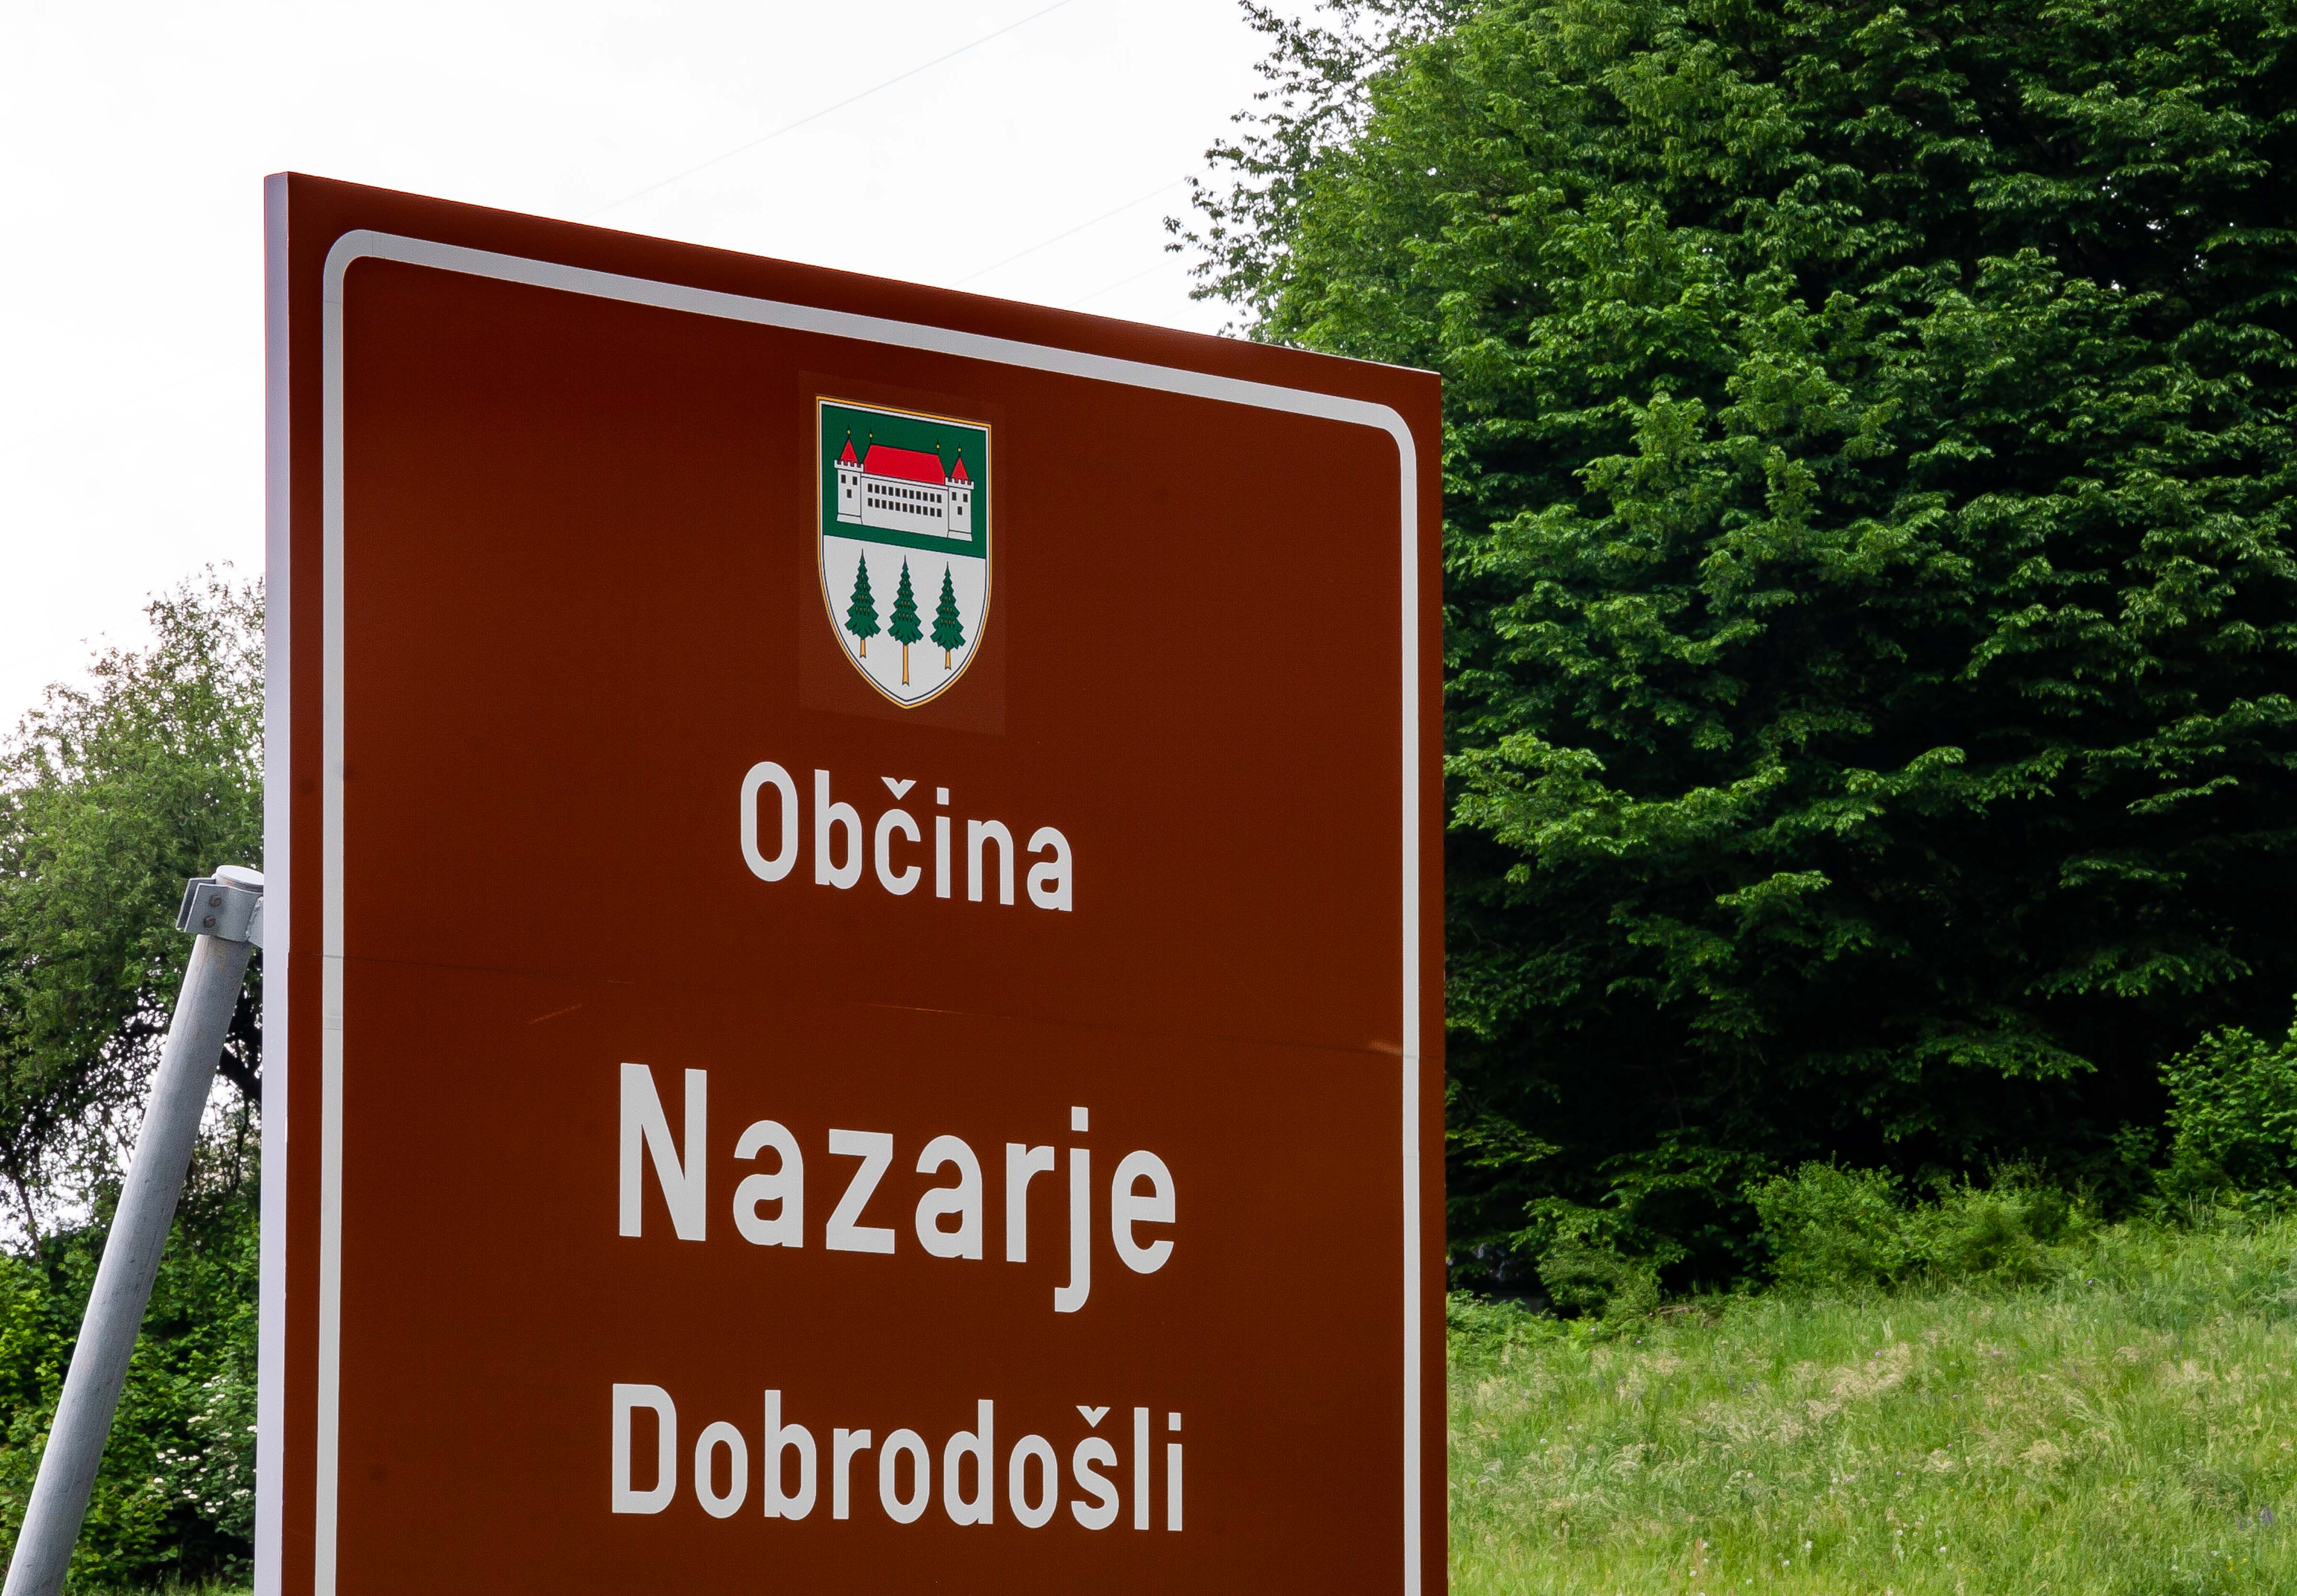 Slovenia, Nazarje Prov, Dobrodosli Obcina Nazarje, 2006, IMG 8244